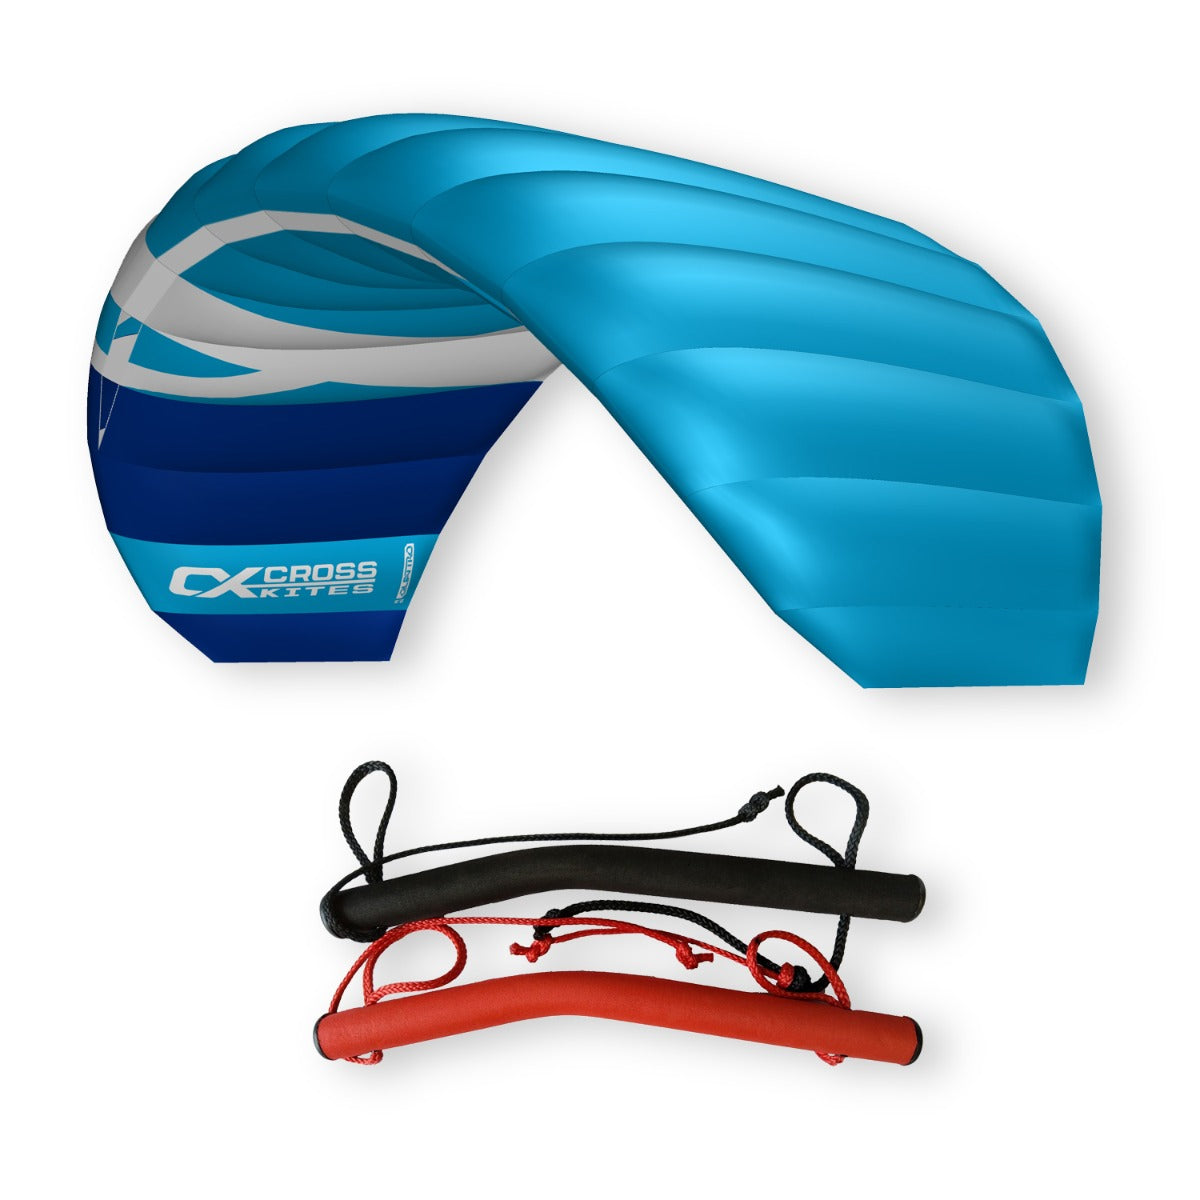 CrossKites Quattro 2.5 Blue Vierleiner Lenkmatte Lenkdrachen mit Handles R2F Kite